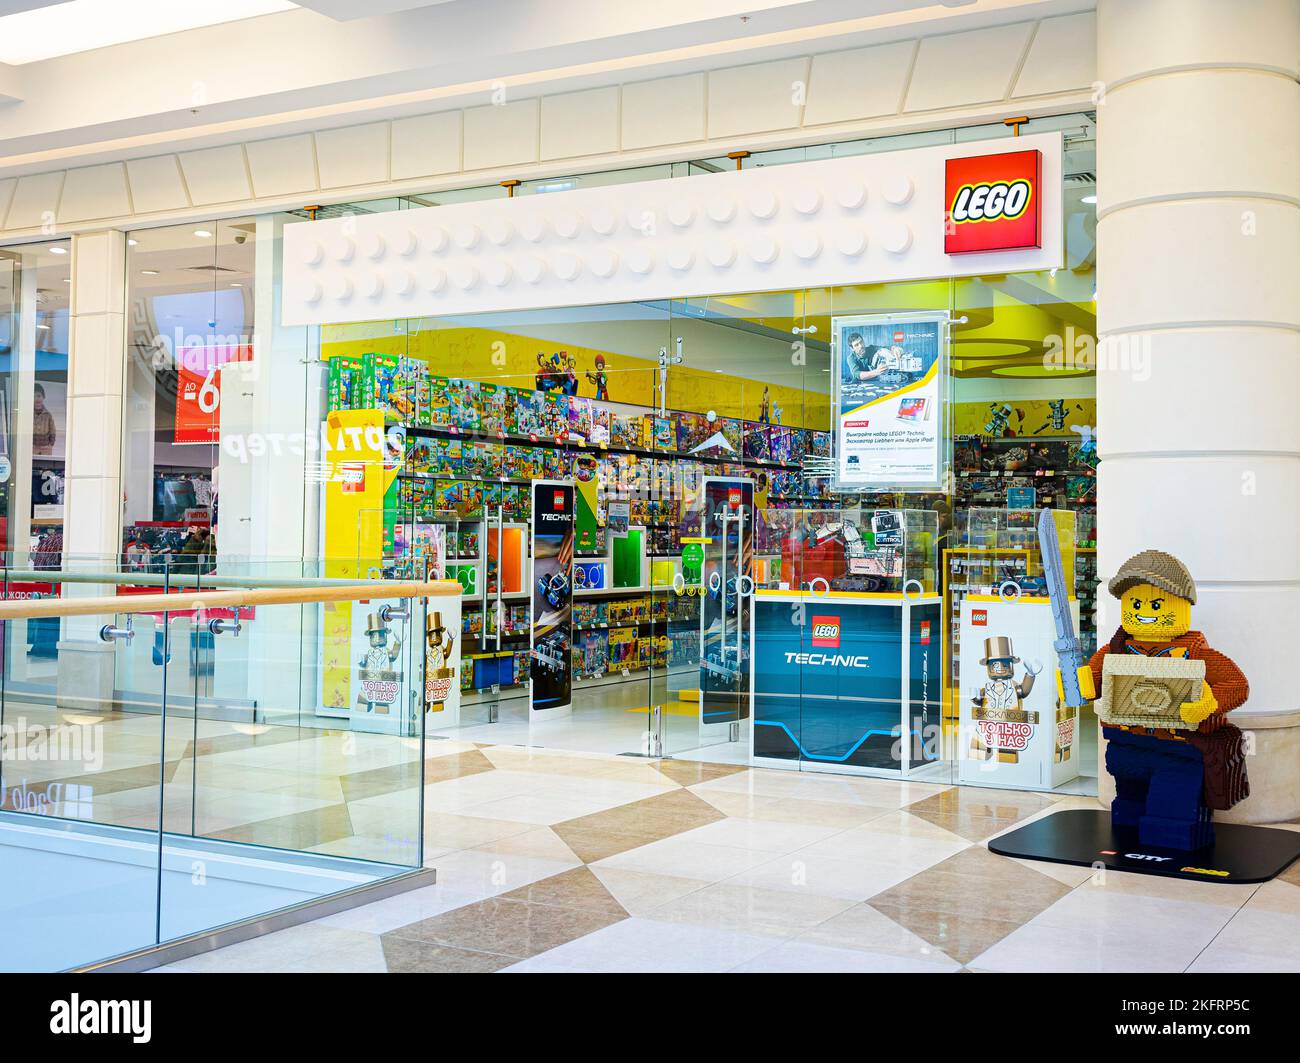 Sankt-Petersburg, Russie - octobre 24 2019 : boutique LEGO au centre commercial Europolis. L'avant du magasin se trouve à l'intérieur du centre commercial. LEGO est une gamme populaire de jouets de construction Banque D'Images